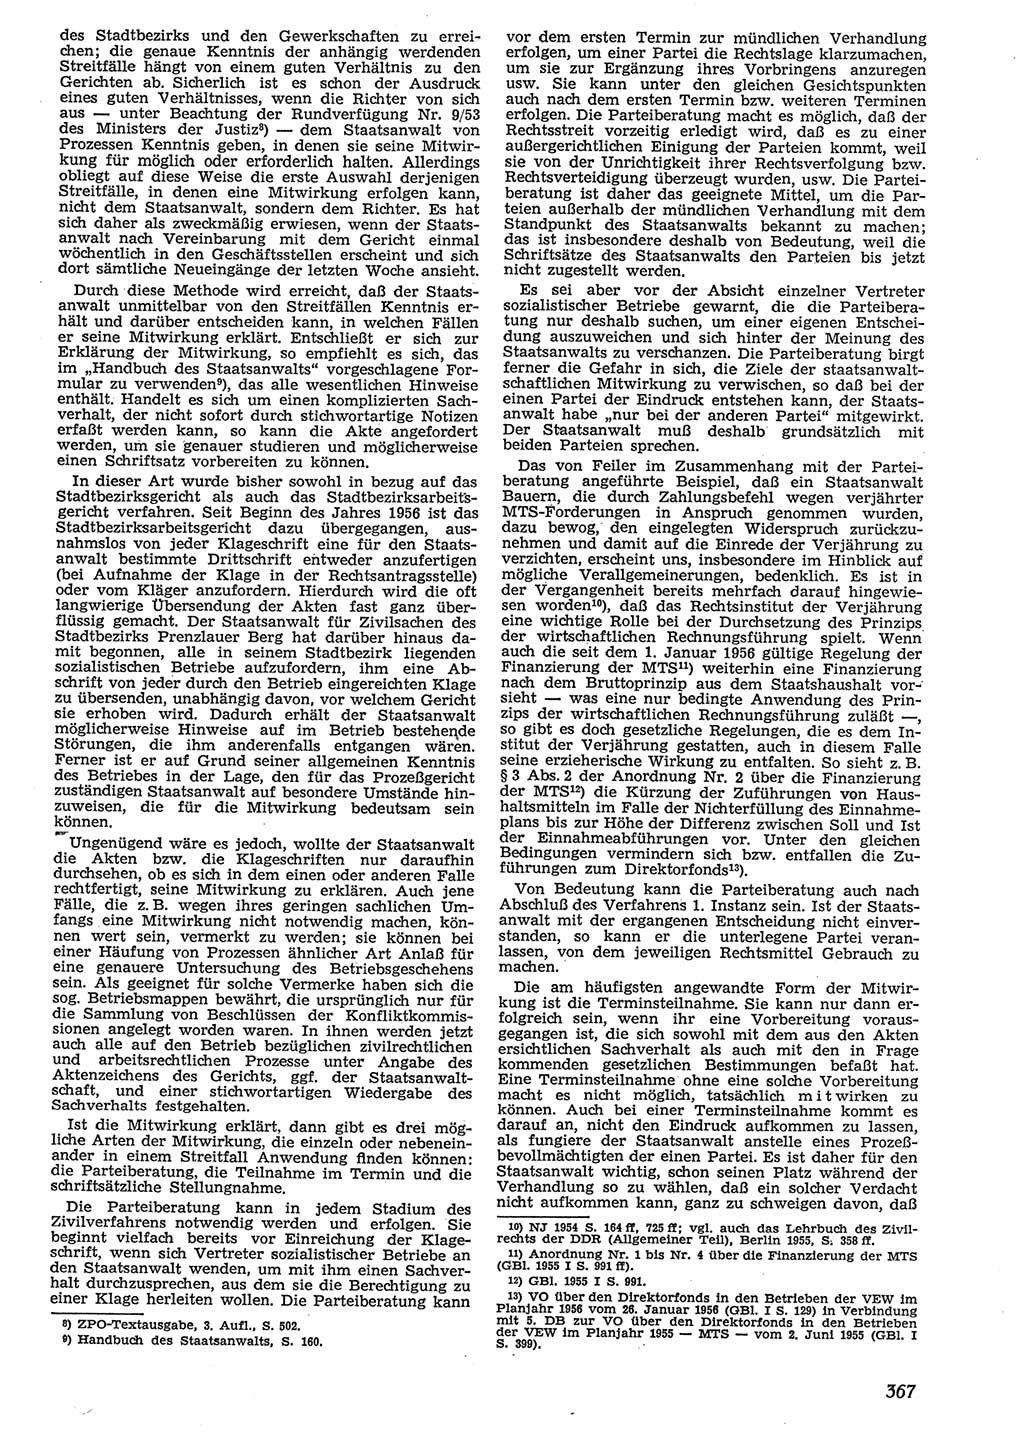 Neue Justiz (NJ), Zeitschrift für Recht und Rechtswissenschaft [Deutsche Demokratische Republik (DDR)], 10. Jahrgang 1956, Seite 367 (NJ DDR 1956, S. 367)